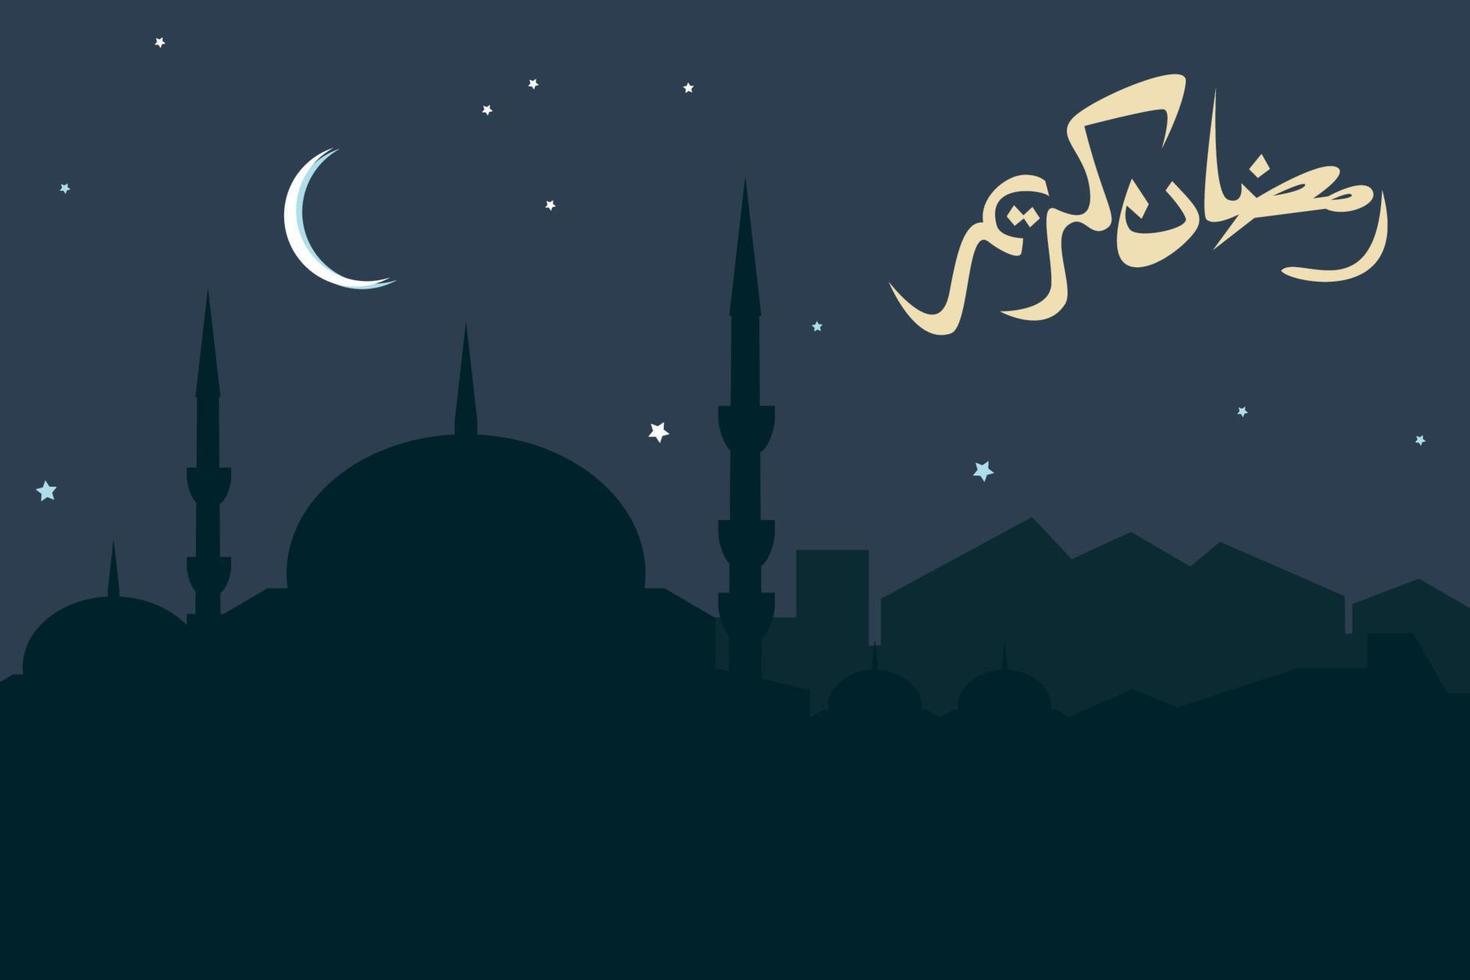 bewerkbare Ramadan nacht tafereel vector illustratie met Arabisch script schoonschrift van Ramadan kareem en moskee silhouet